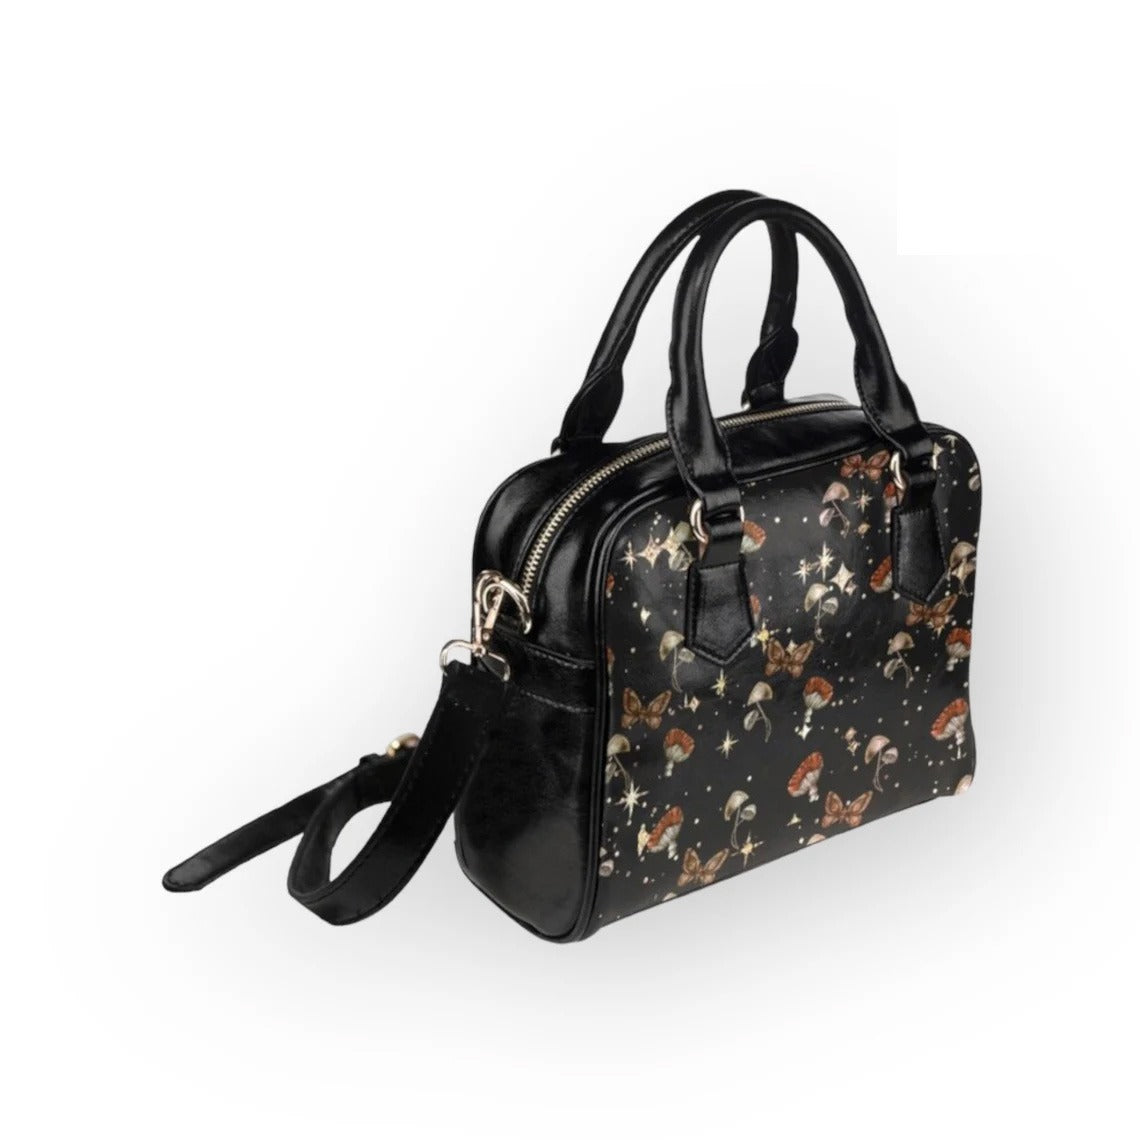 Starry Mushroom Moth Handbag